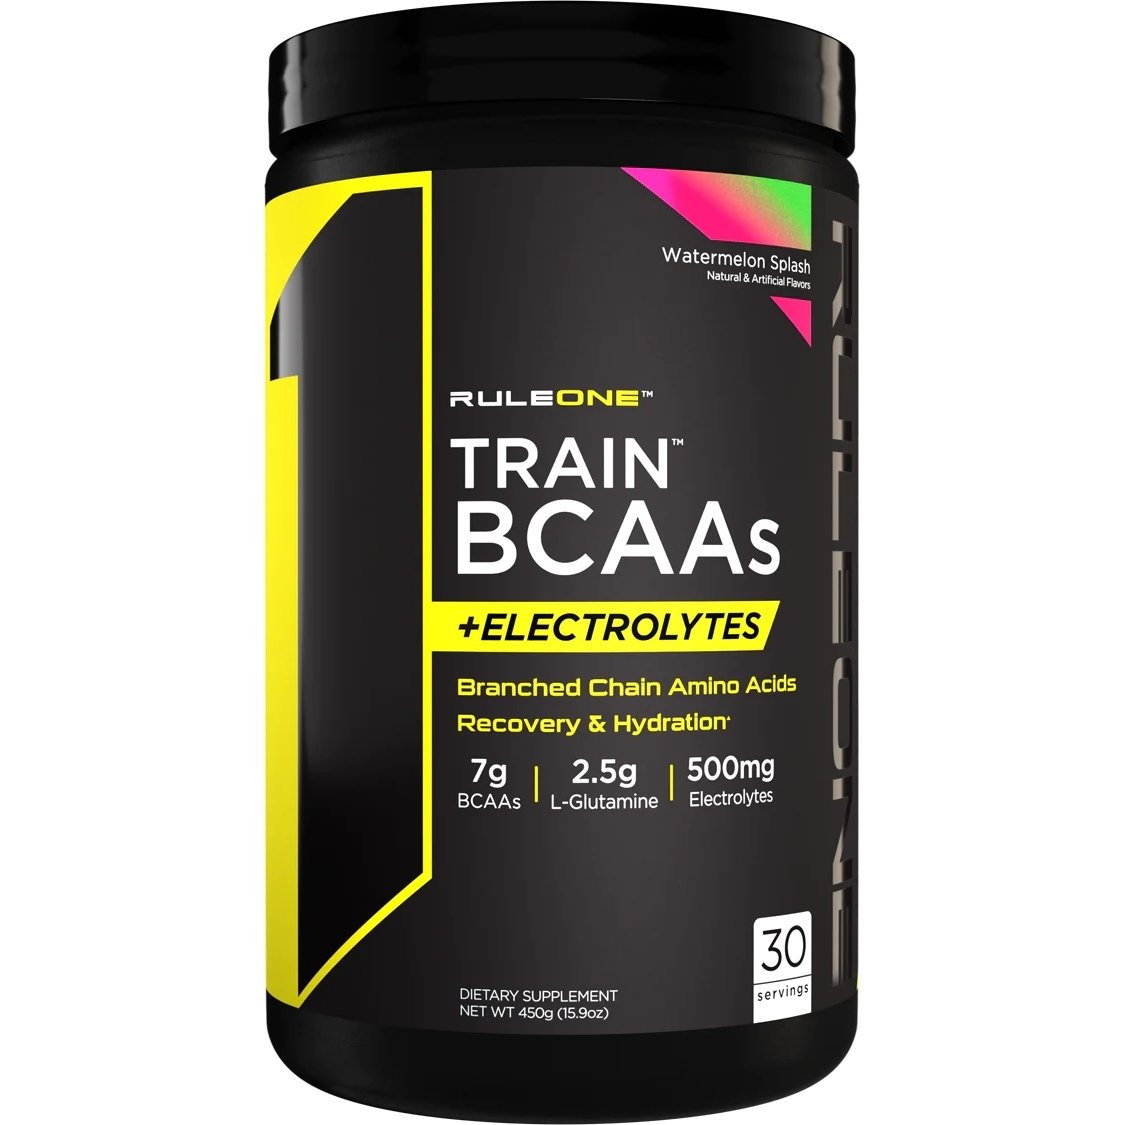 Аминокислота BCAA Rule 1 Train BCAAs + Electrolytes, 450 грамм Арбуз,  ml, Rule One Proteins. BCAA. Weight Loss recovery Anti-catabolic properties Lean muscle mass 